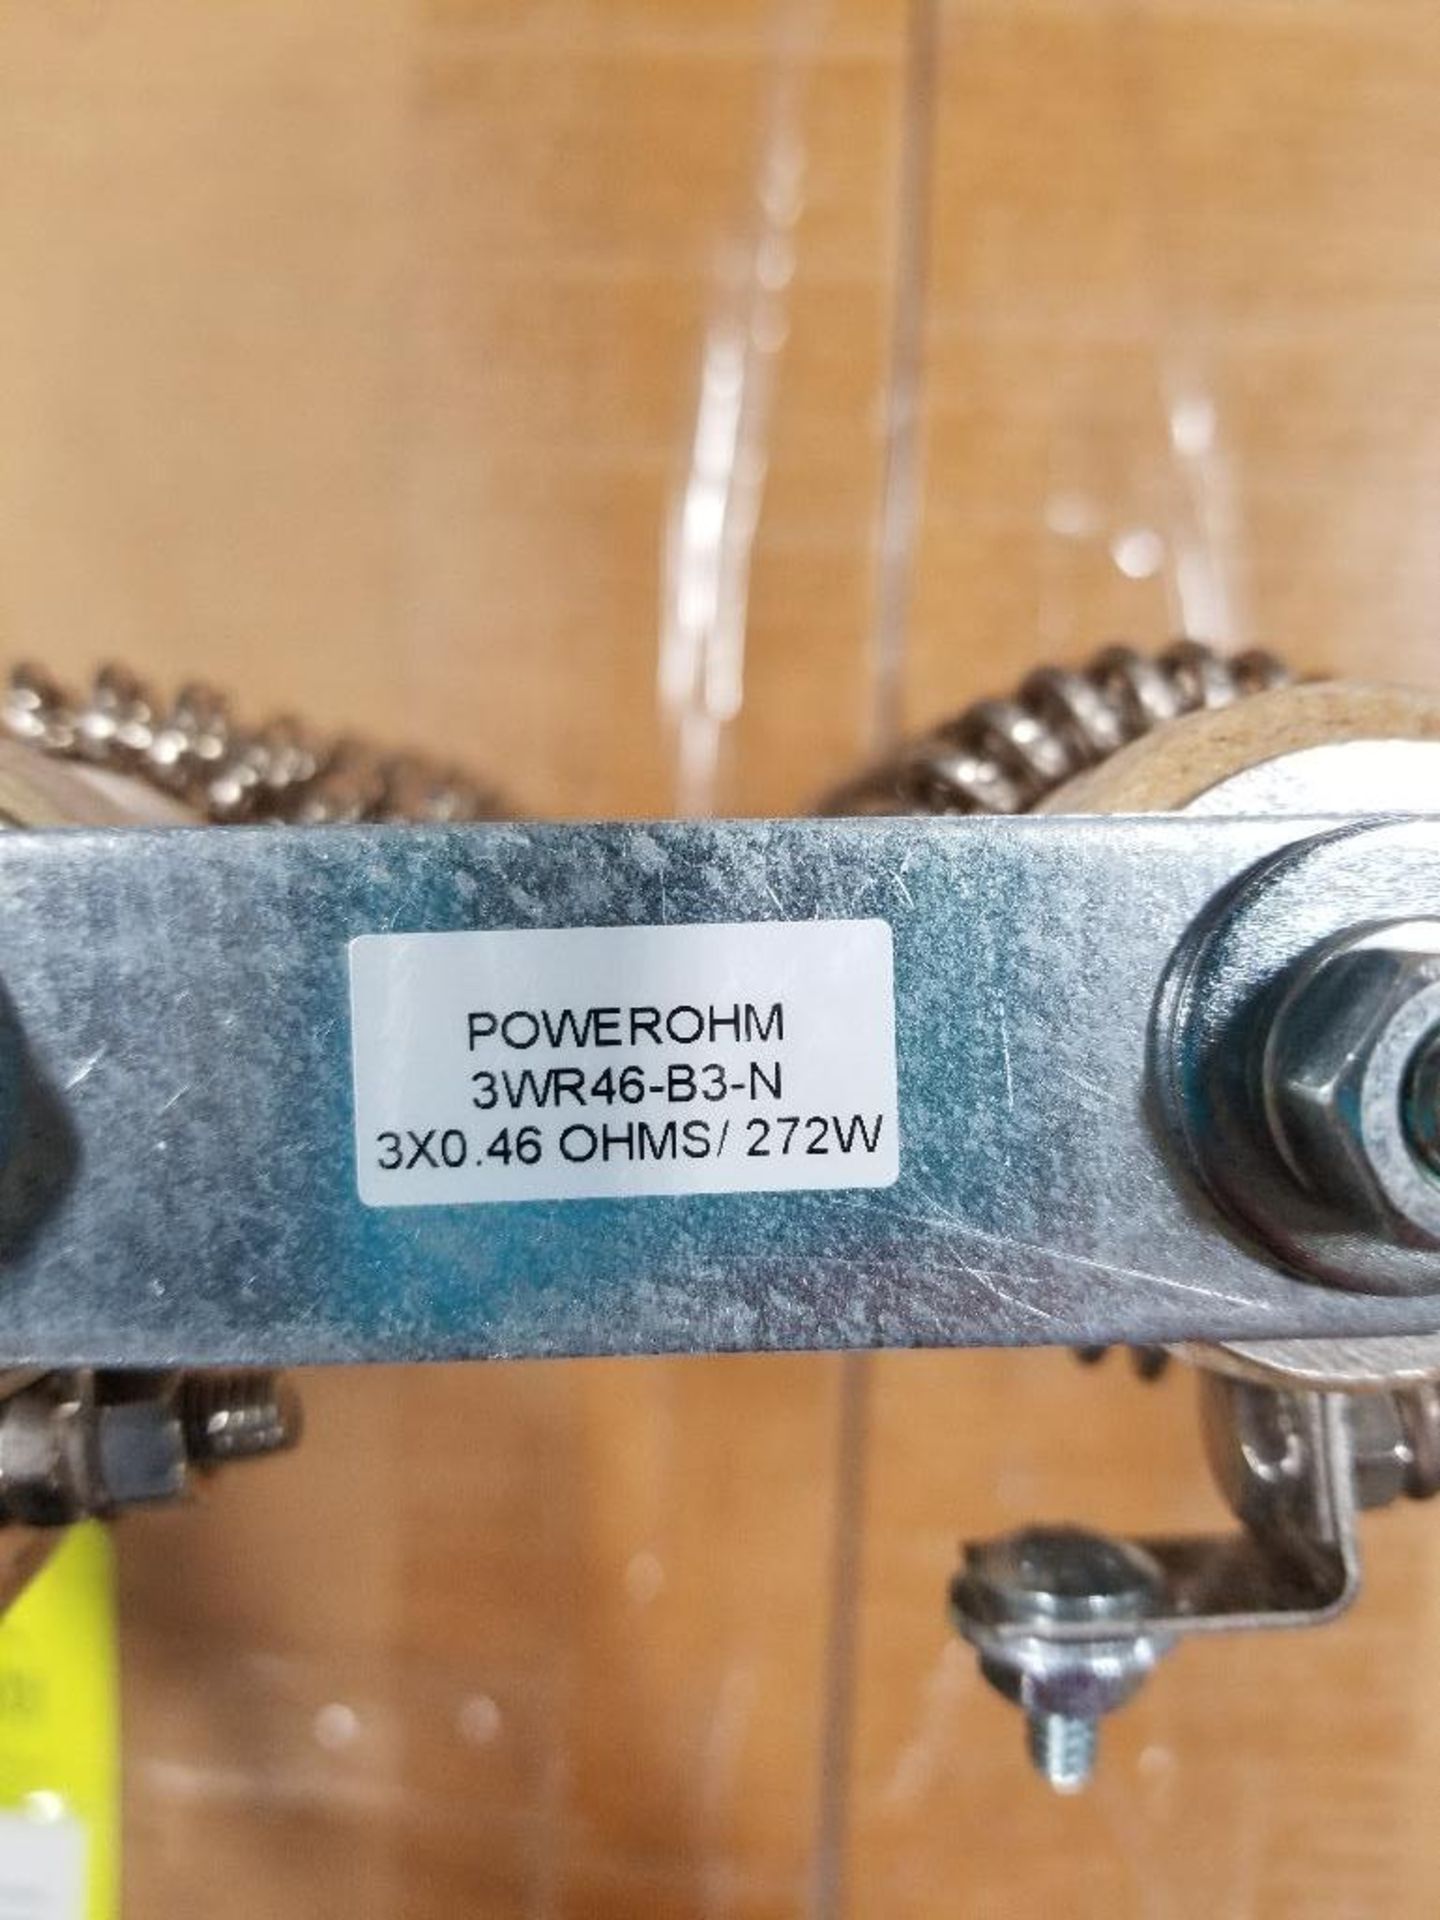 Qty 9 - Powerohm resistor. Model 3WR46-B3-N. 3x.46ohms. 272 watts. - Bild 3 aus 3